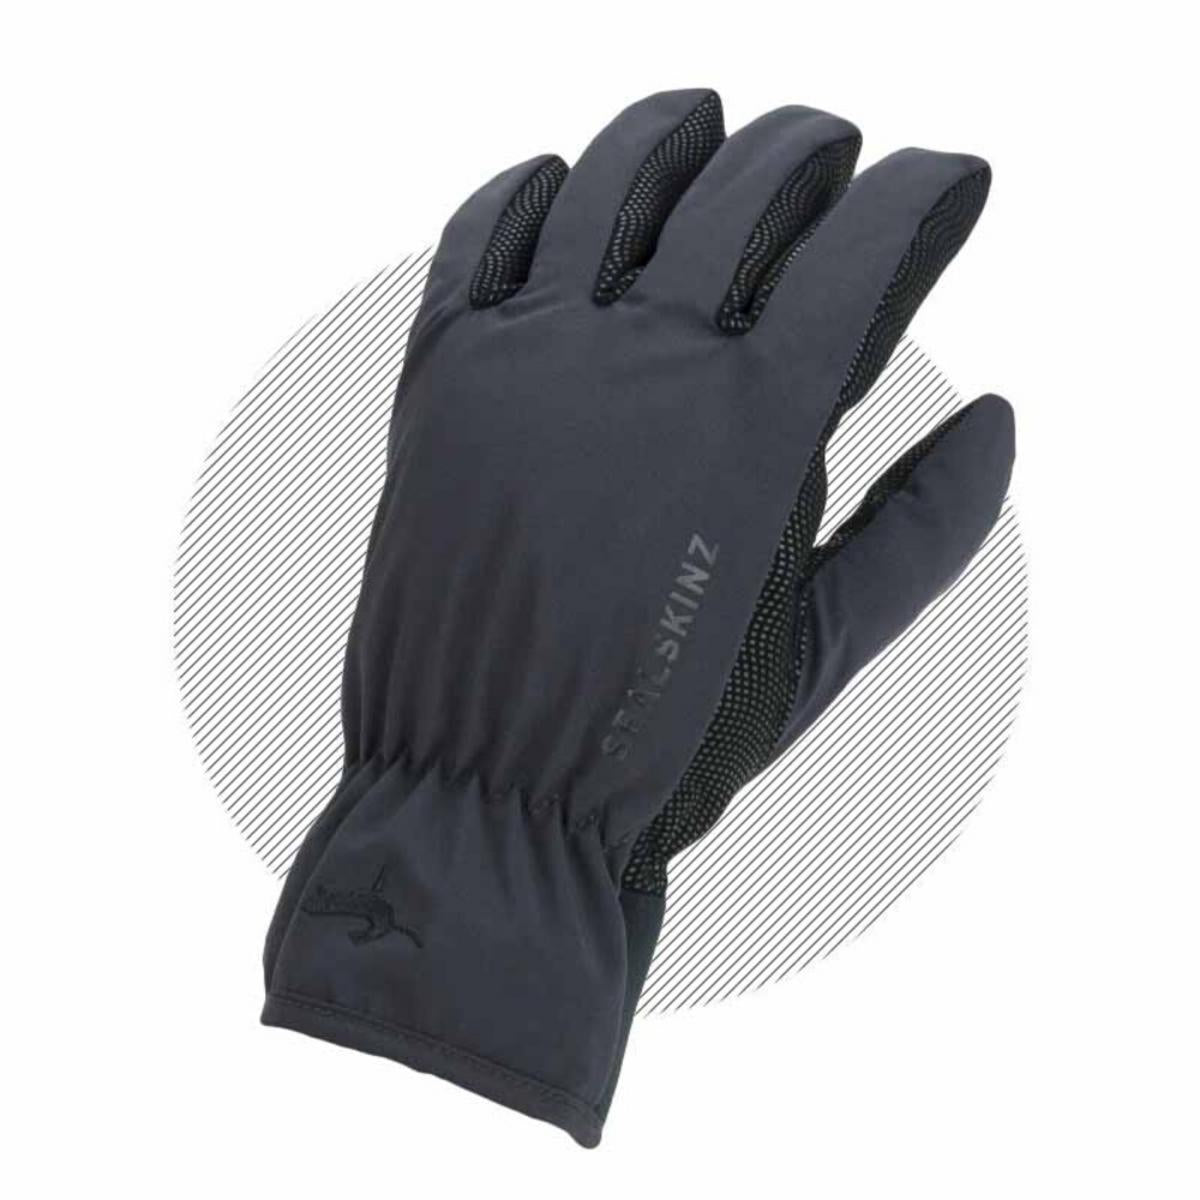 SealSkinz Griston Waterproof All Weather Lightweight Gloves